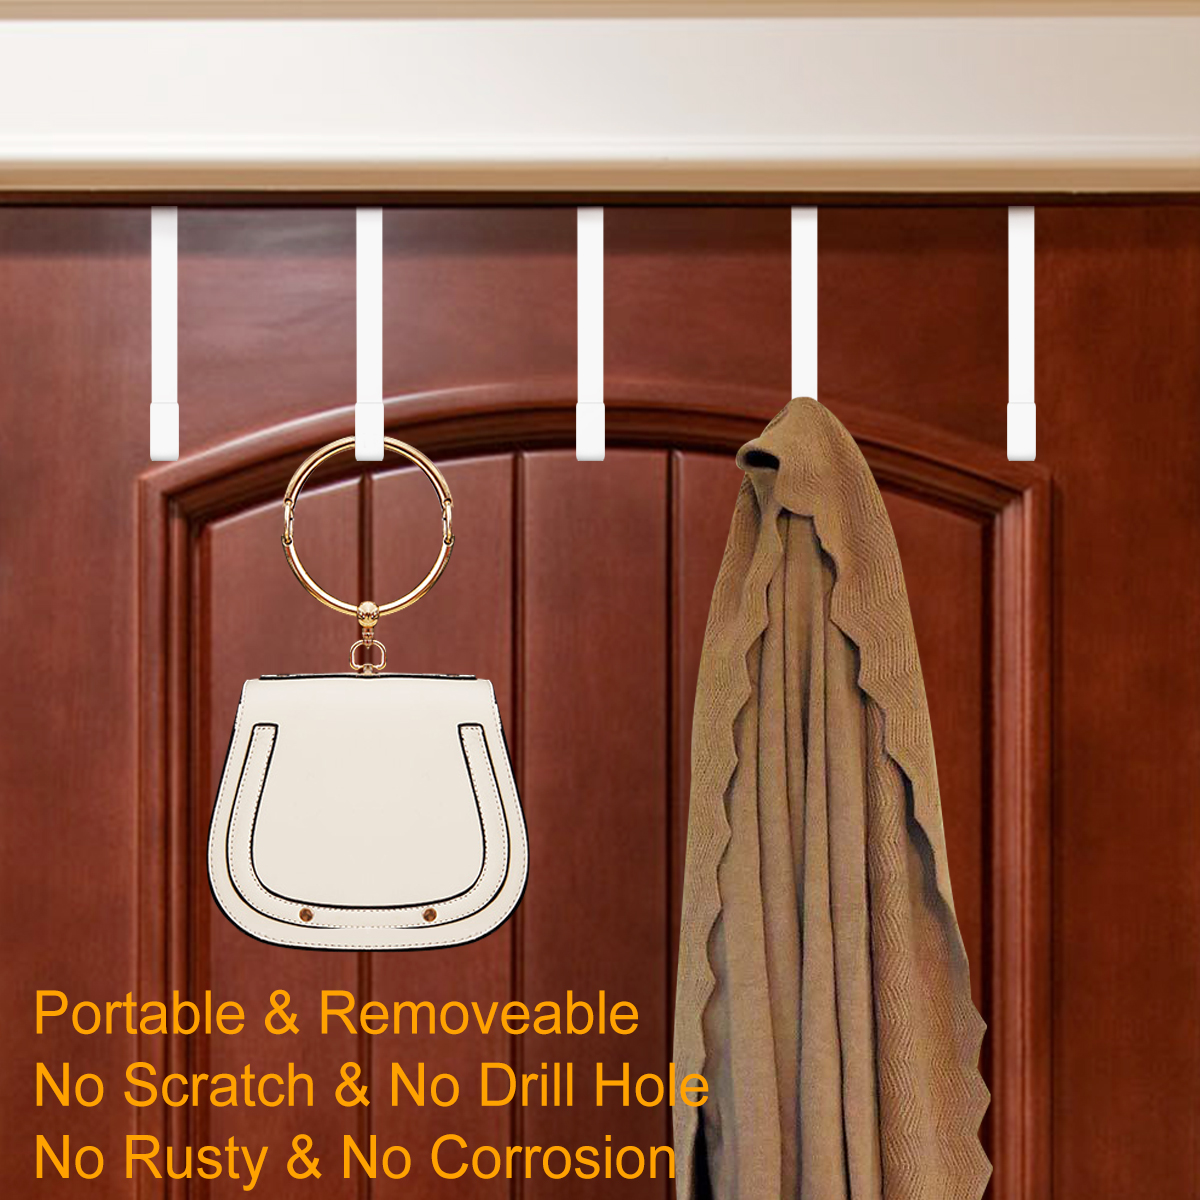 Over the Door Hanger Hooks Metal for Hanging Clothes, Towel, Coat, Bathroom, Bedroom, 5 Pcs, White - image 2 of 7